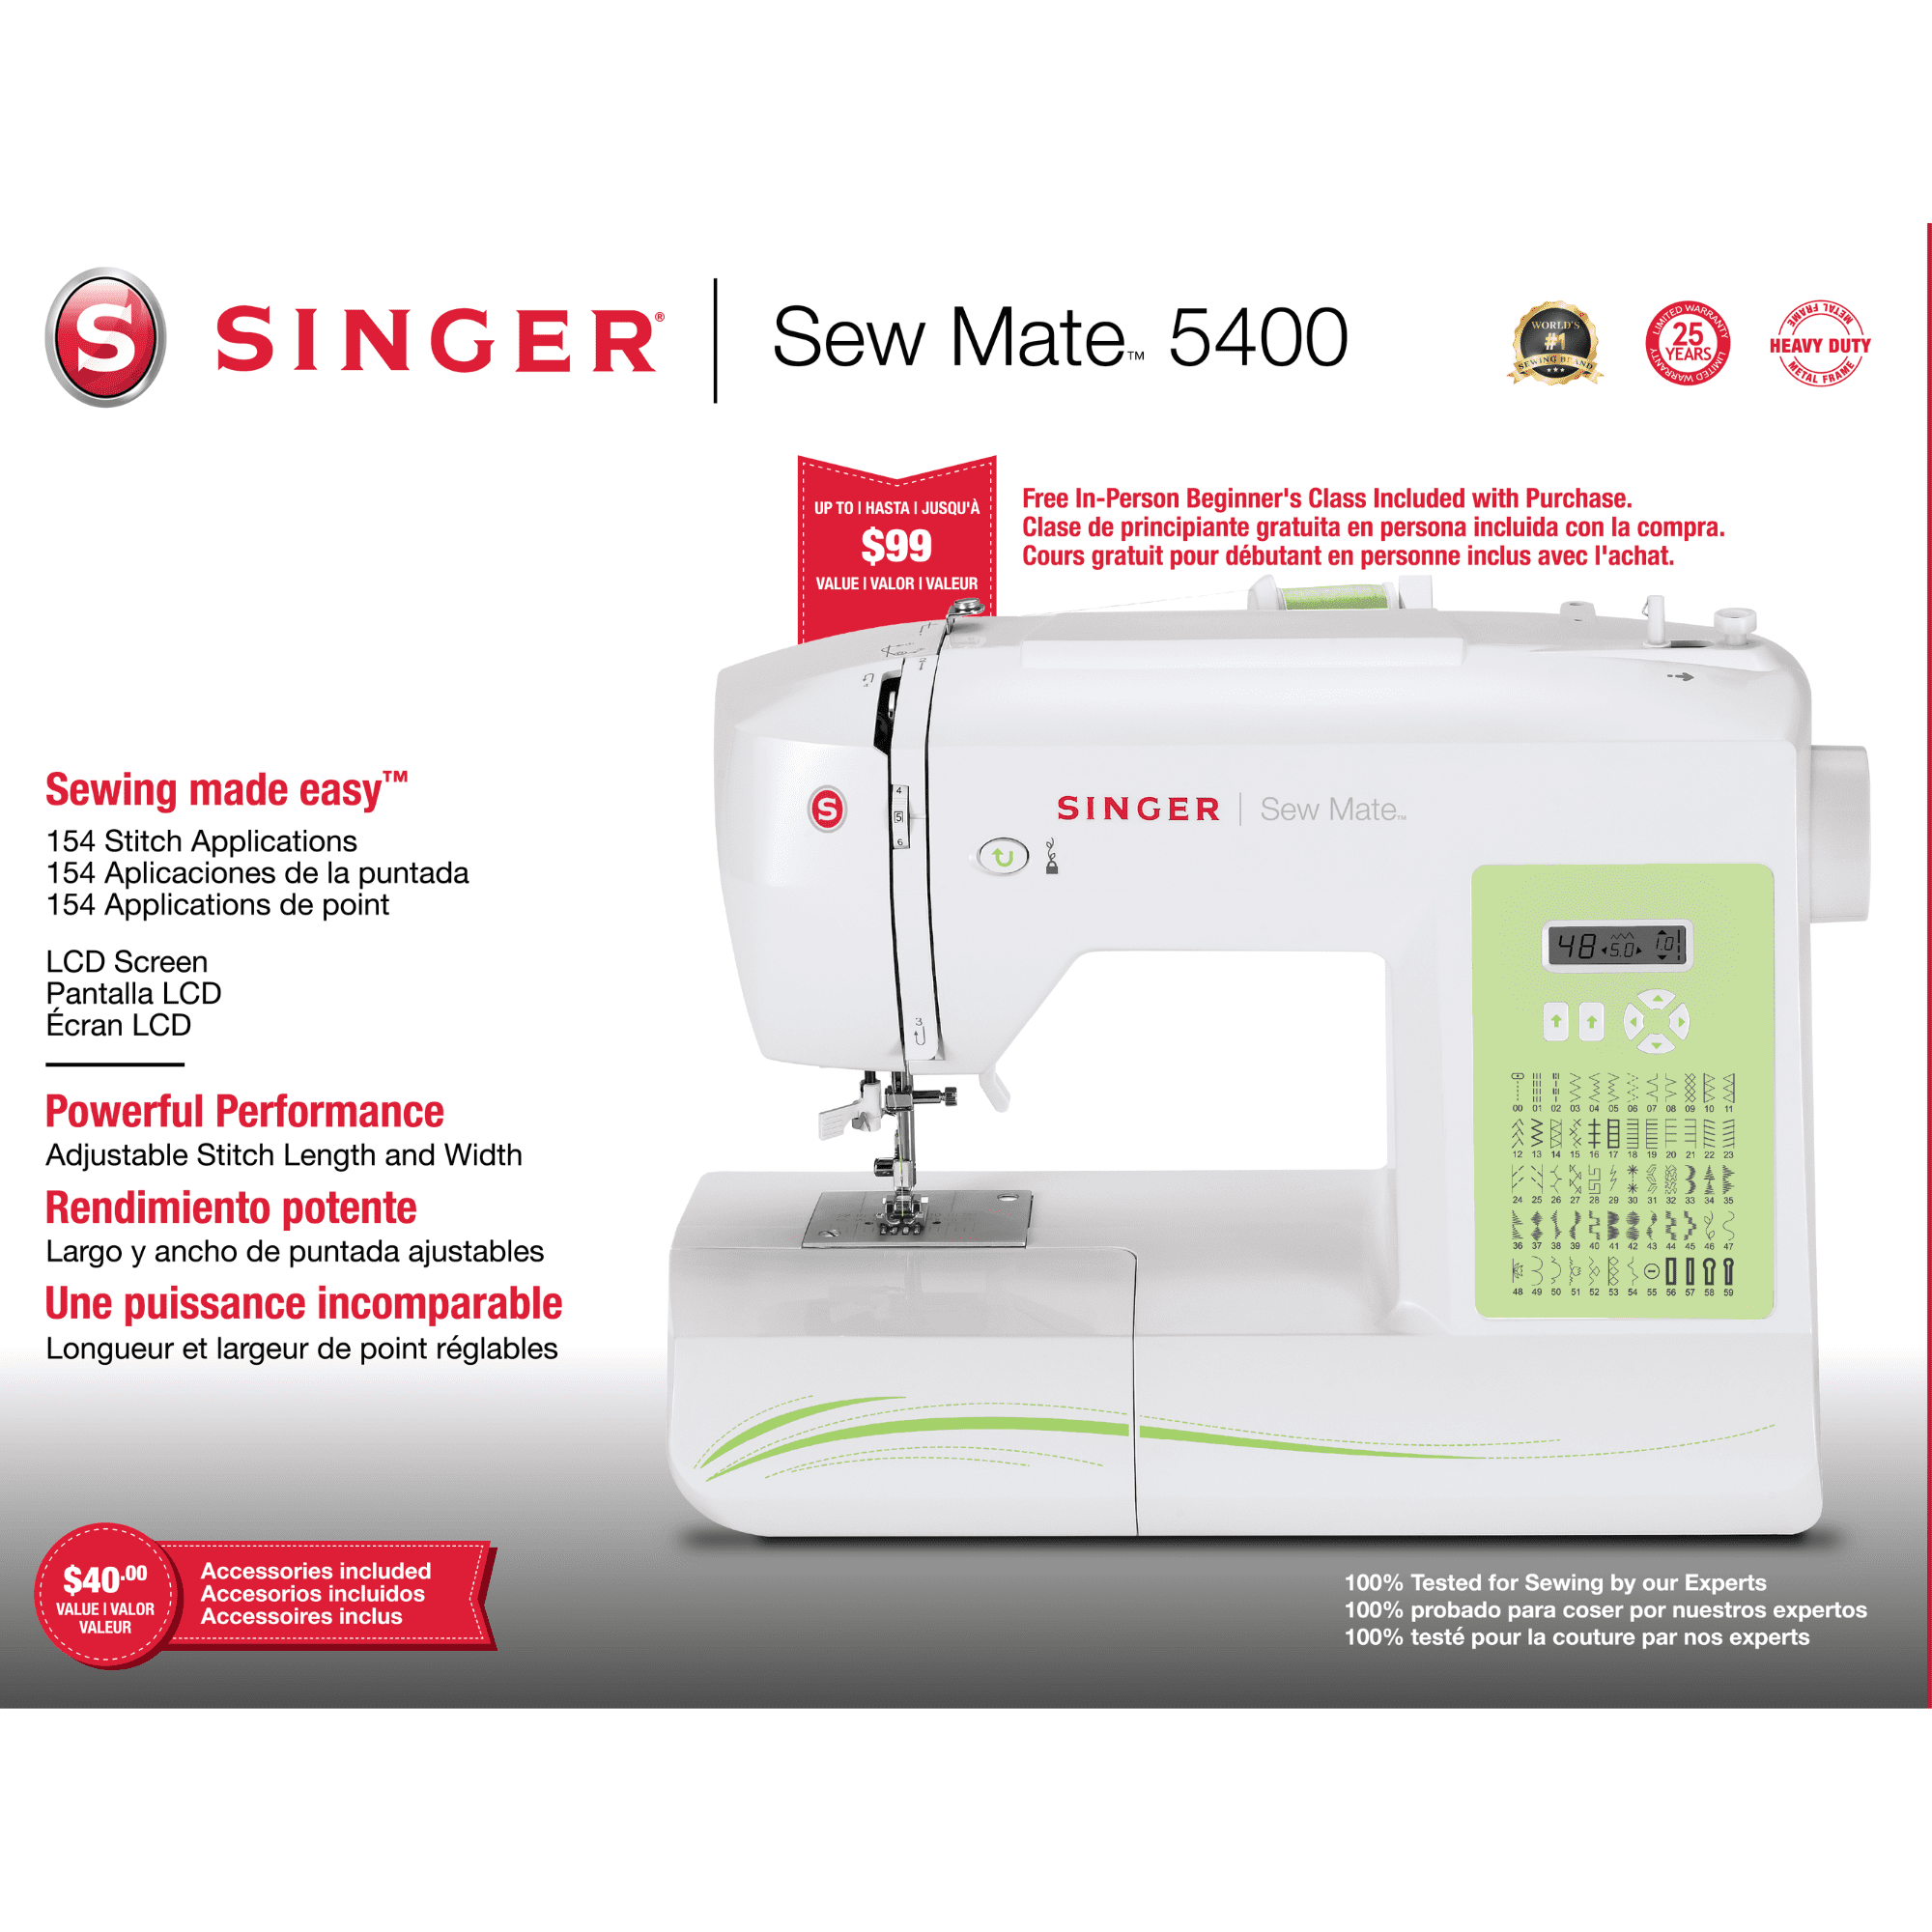  Máquina de coser Singer 5400 Sew Mate : Todo lo demás